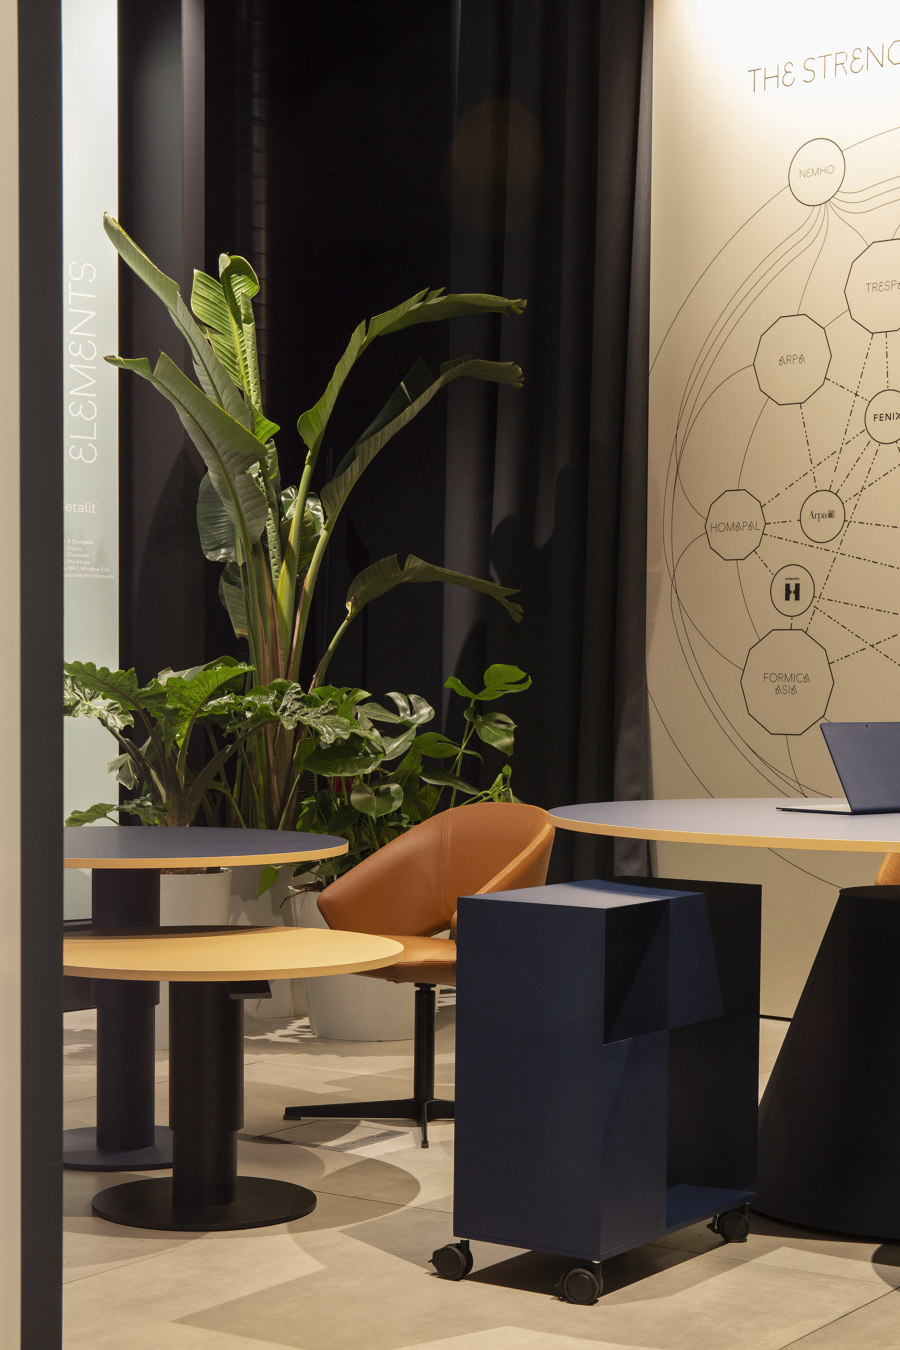 Mara’s Milan manifesto: designing furniture that makes us feel | News